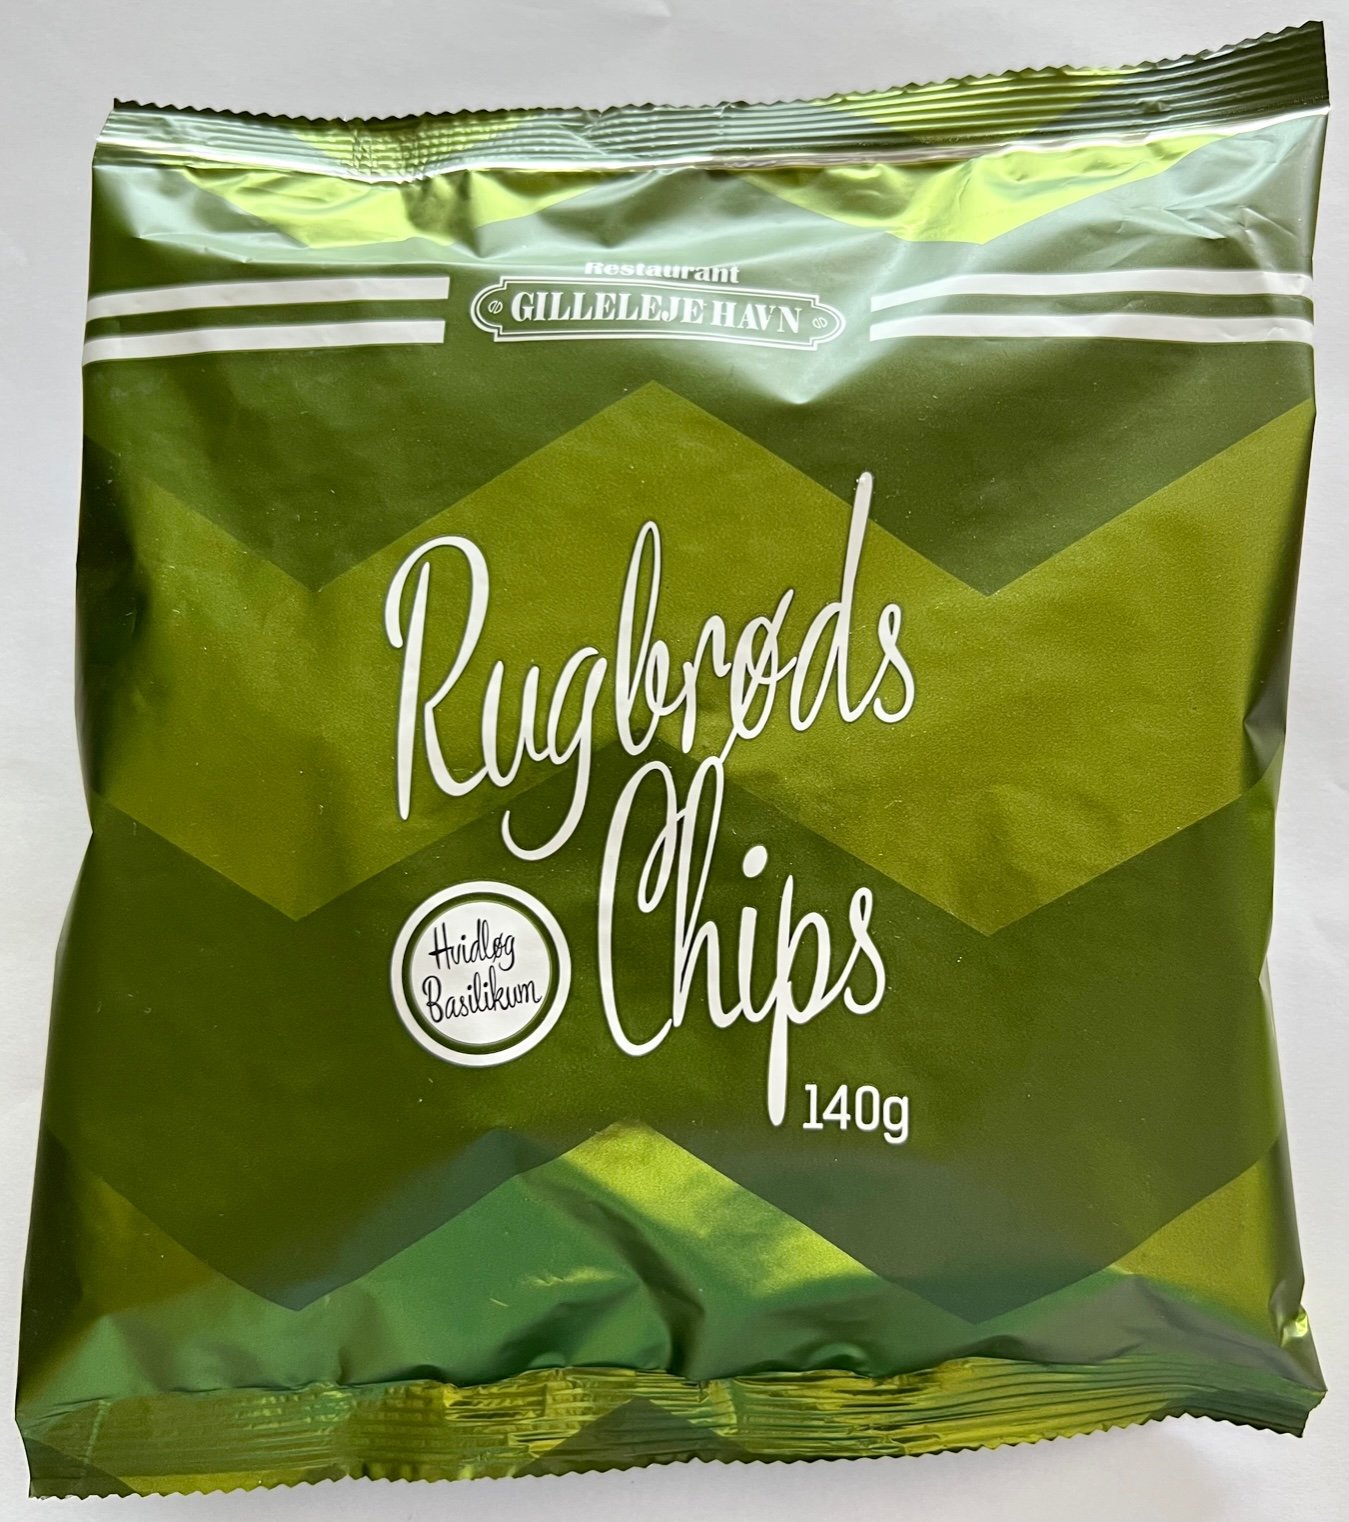 Gilleleje Rugbrøds Chips  Basil & Garlic 140 g